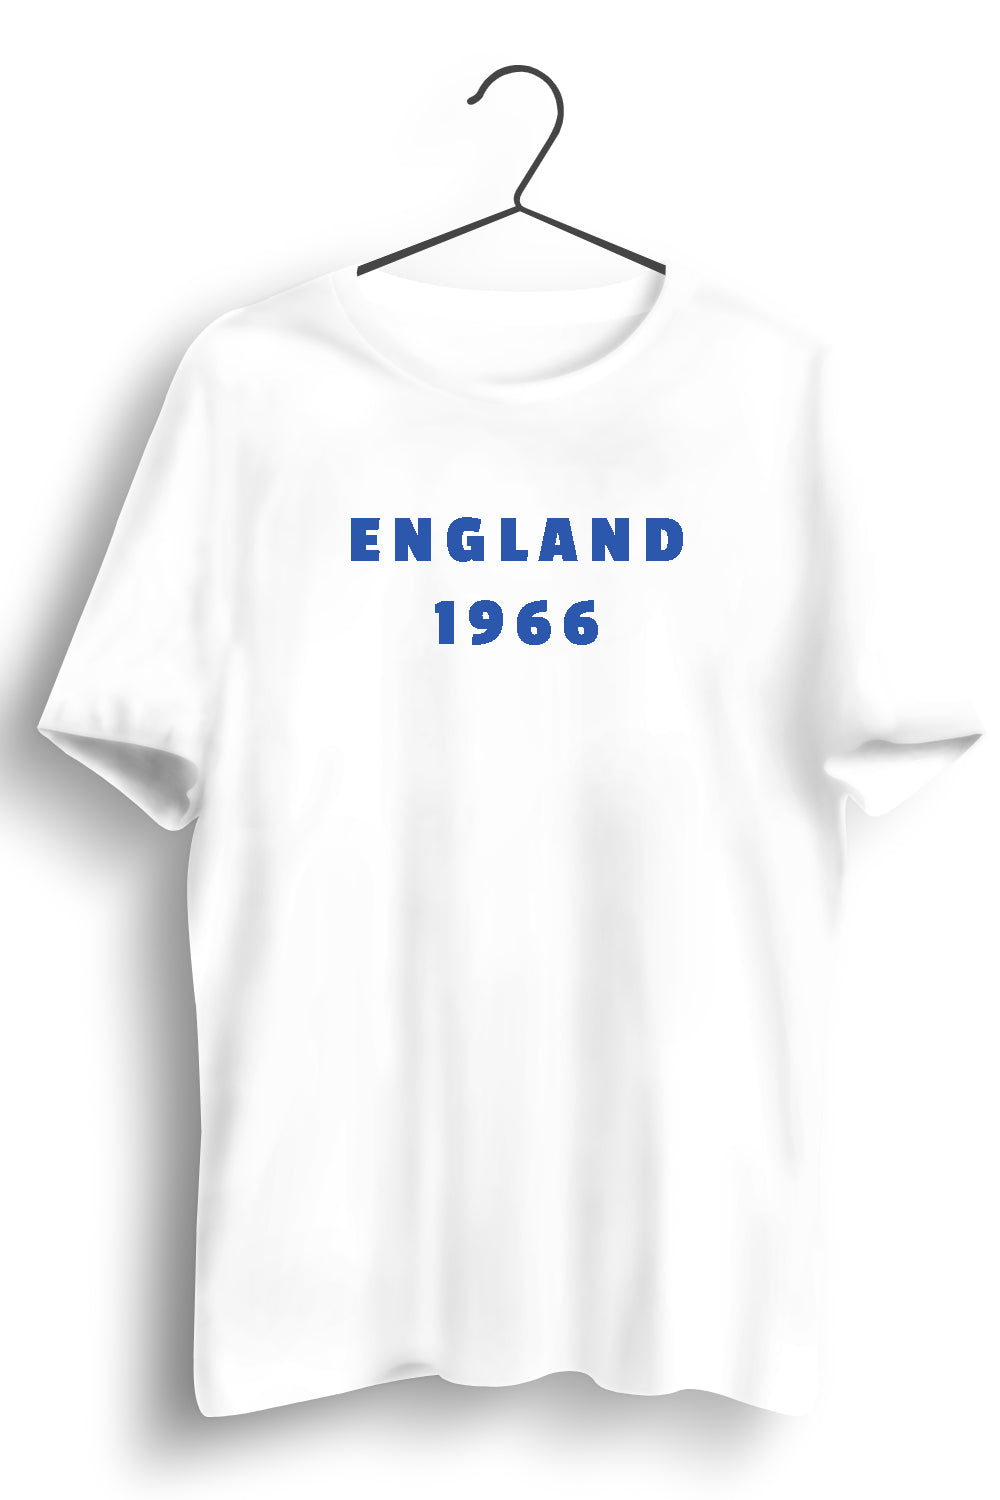 England 1966 Graphic Printed White Tshirt